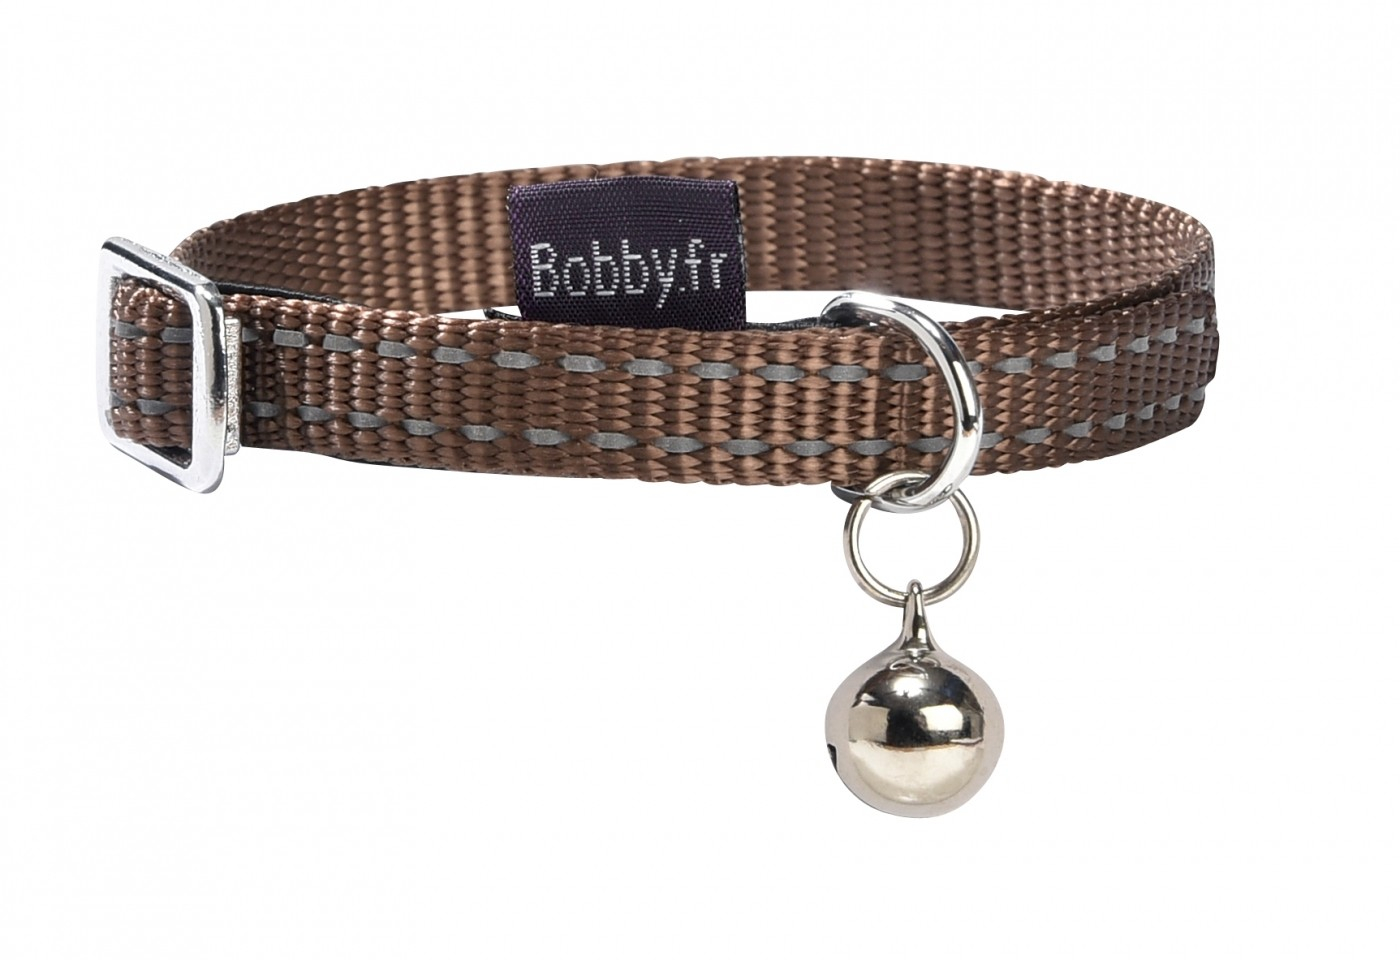 Halsband voor honden Safe Bobby - verschillende kleuren - reflecterend met belletje